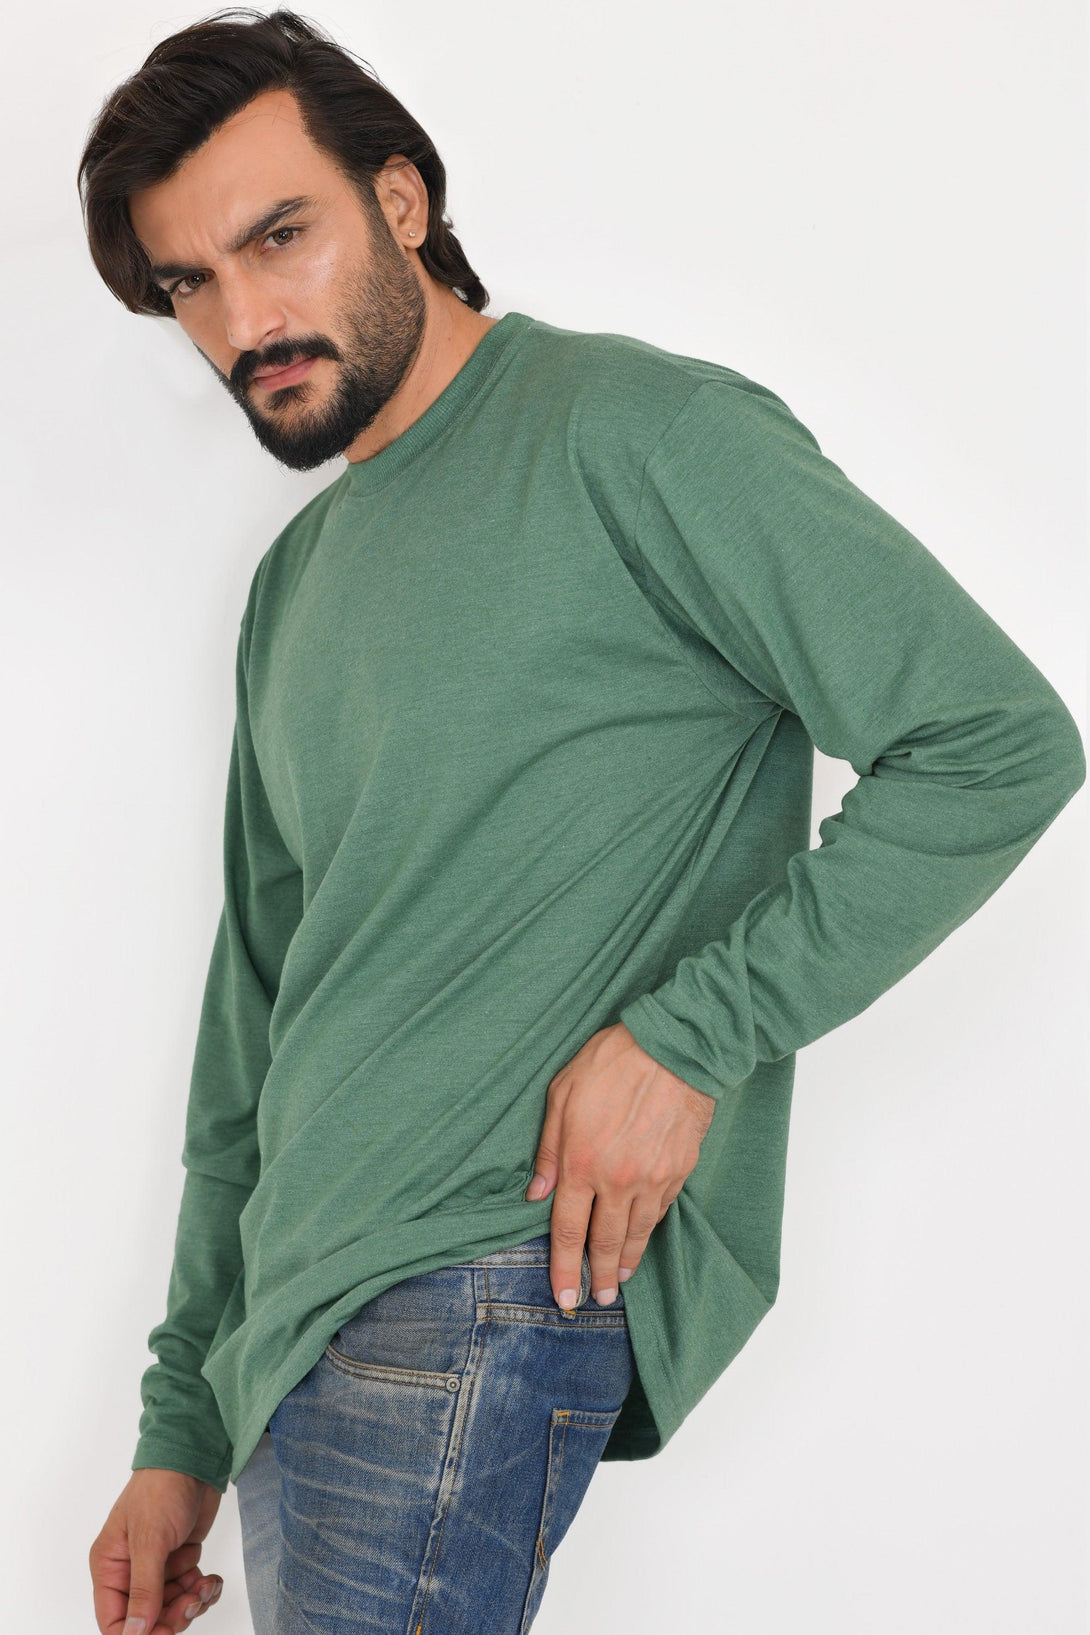 Long & Tall Full Sleeves Shirts | Pack of 3 | Stone - Green Melange - Navy Melange - FTS